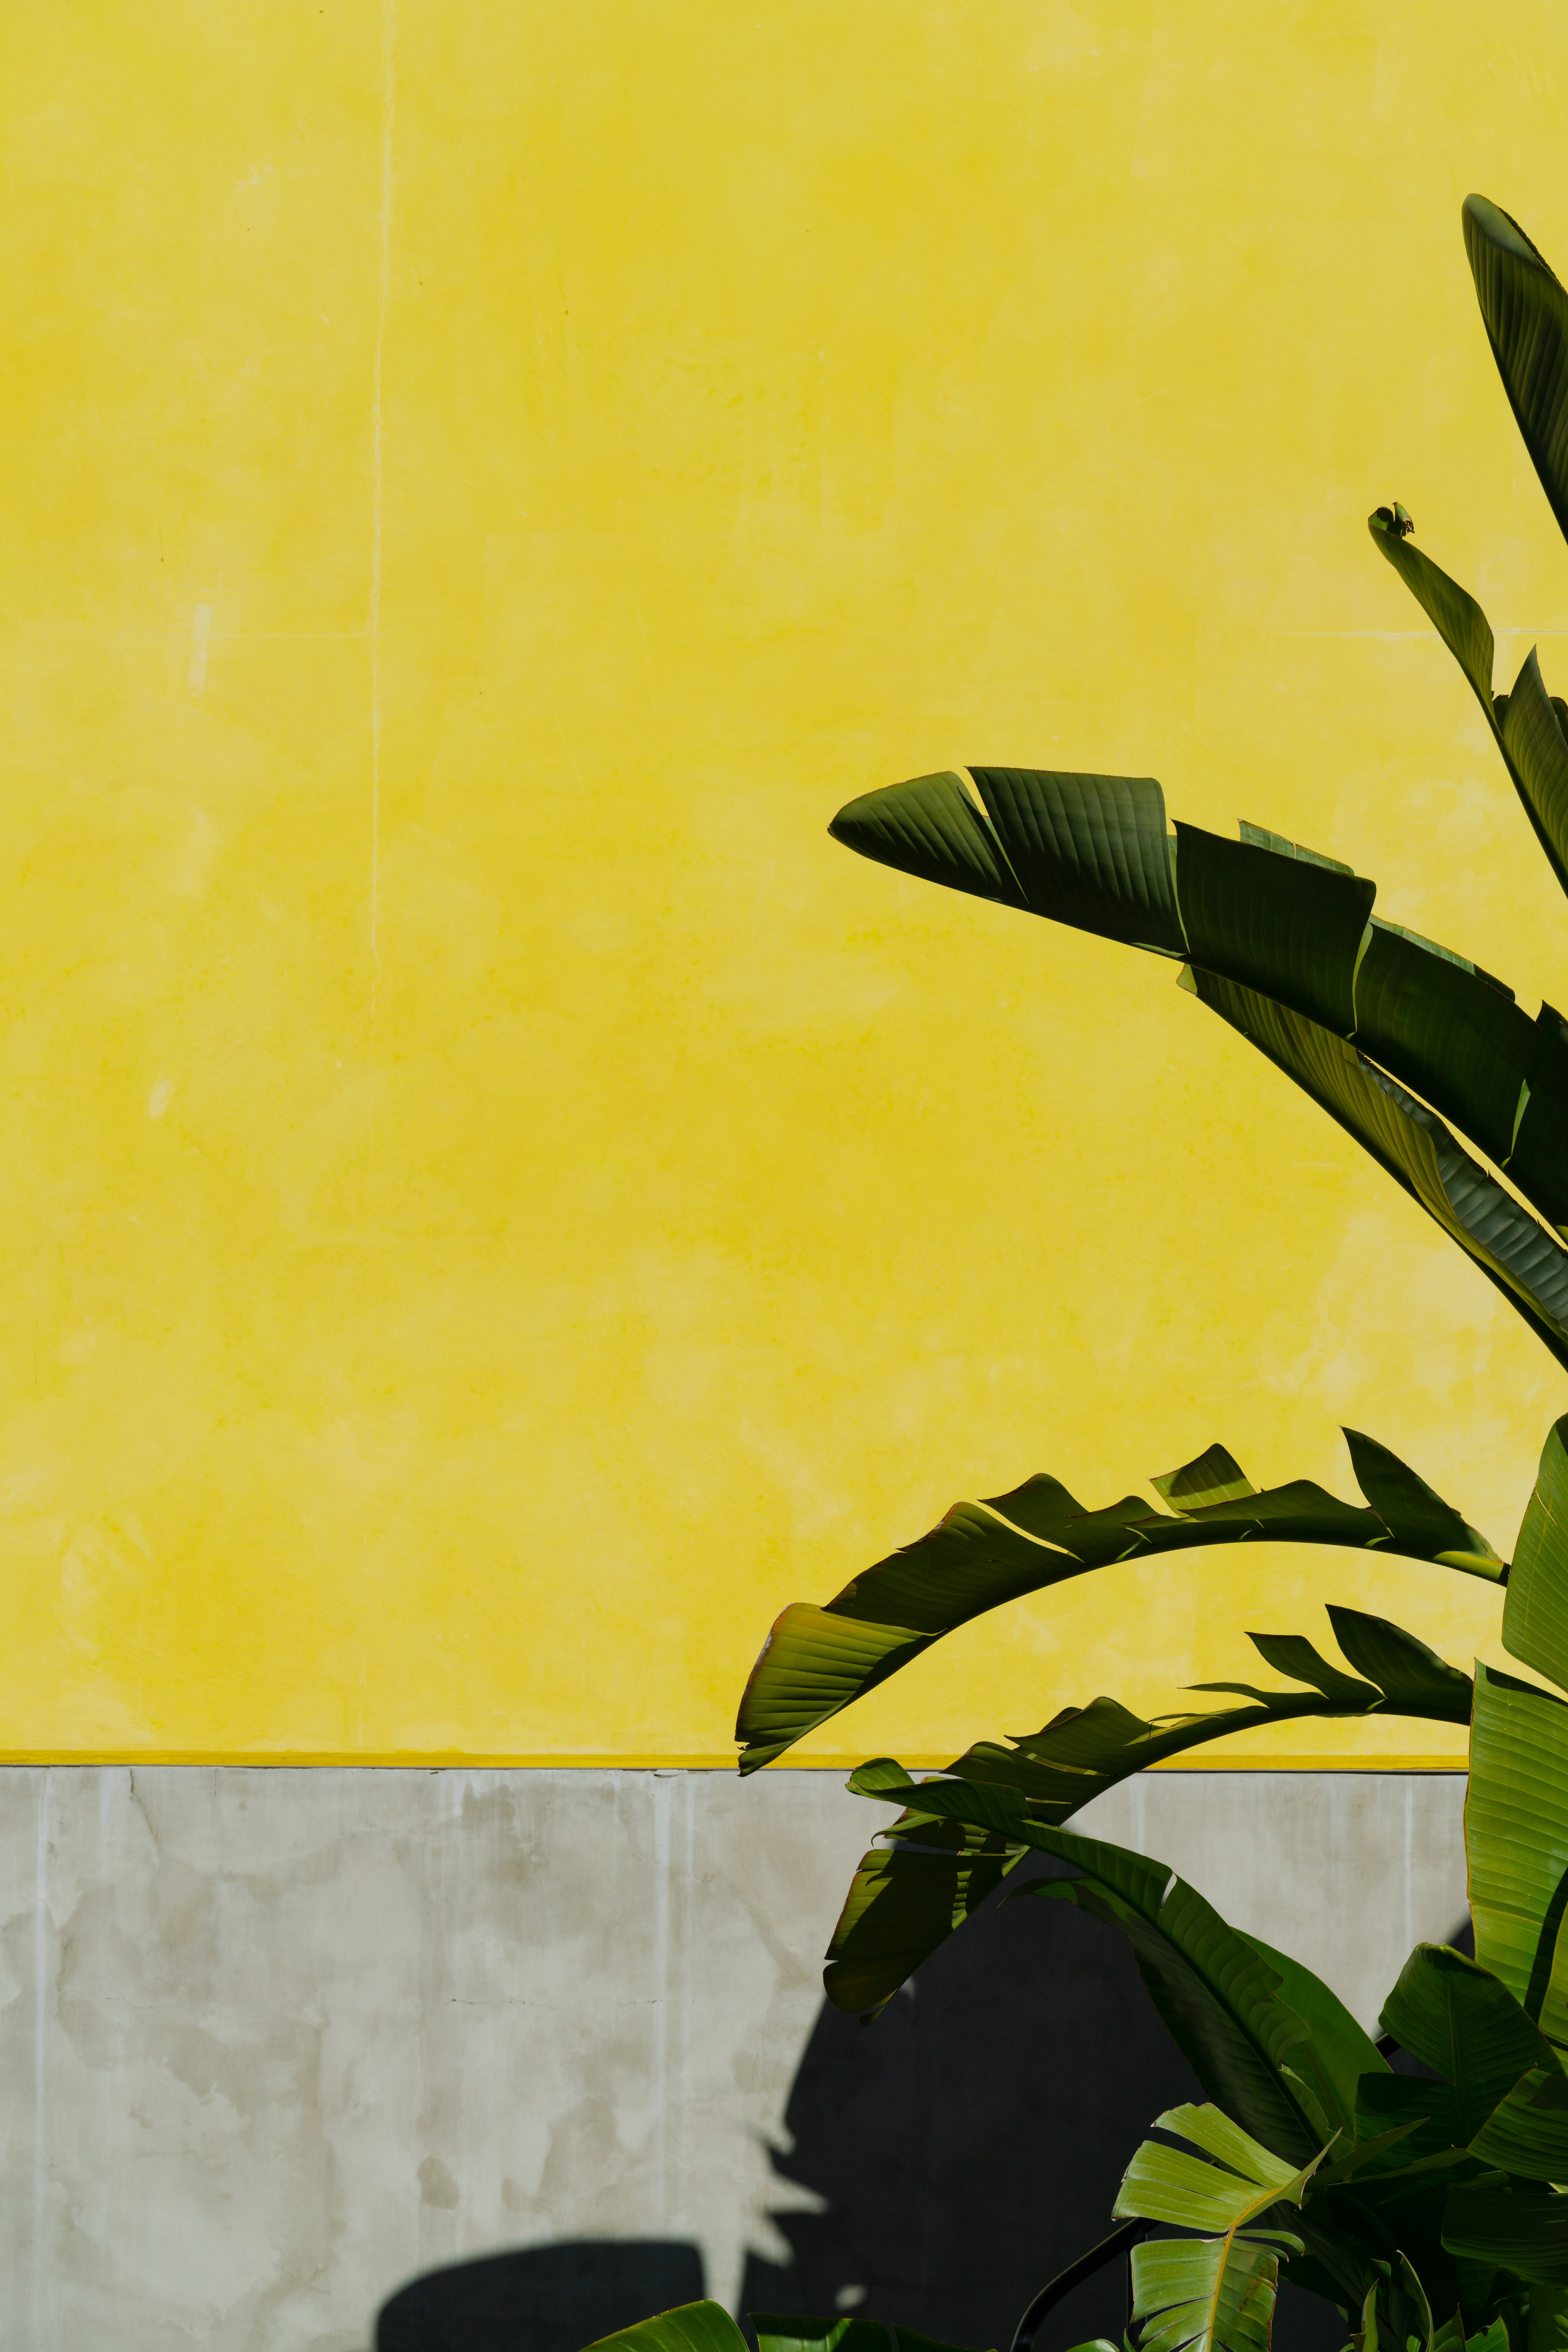 Скачать обои бесплатно Банановая Пальма, Желтый, Растение, Листья, Стена, Разное картинка на рабочий стол ПК